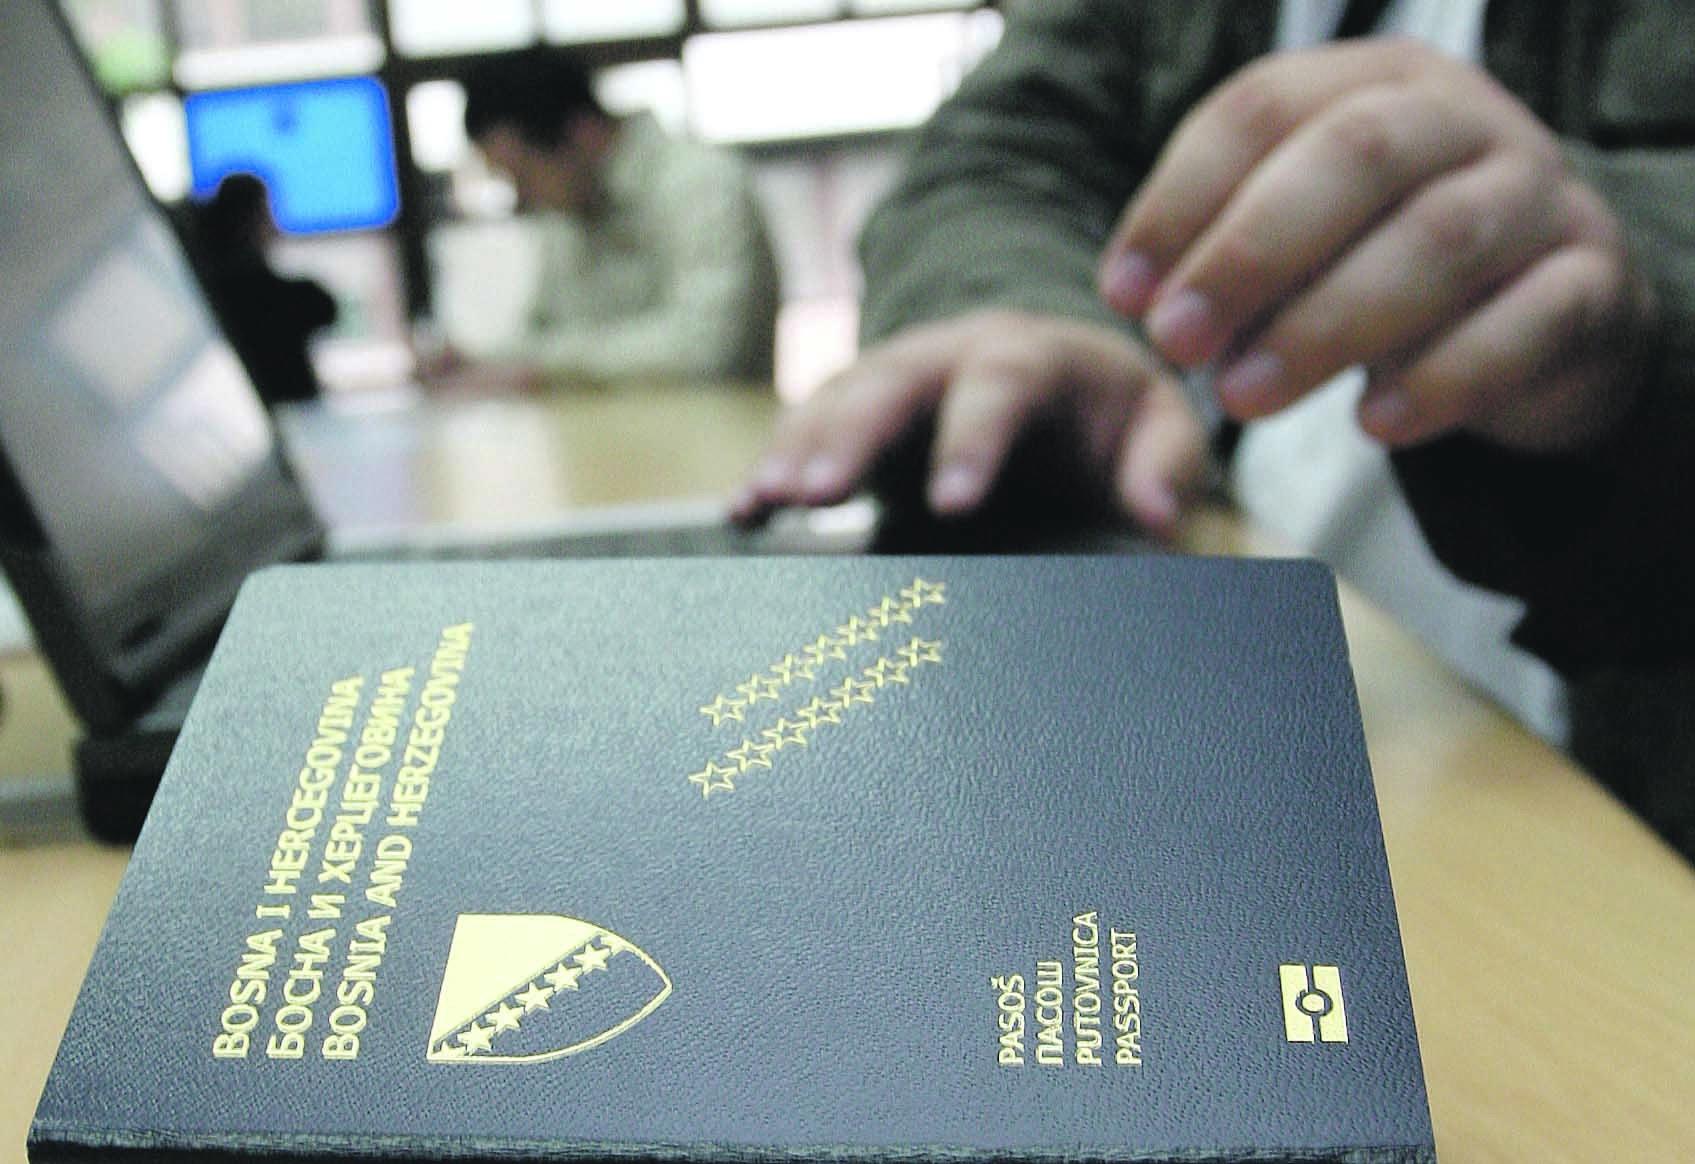 Uprkos obećanjima bh. pasoši neće biti jeftiniji